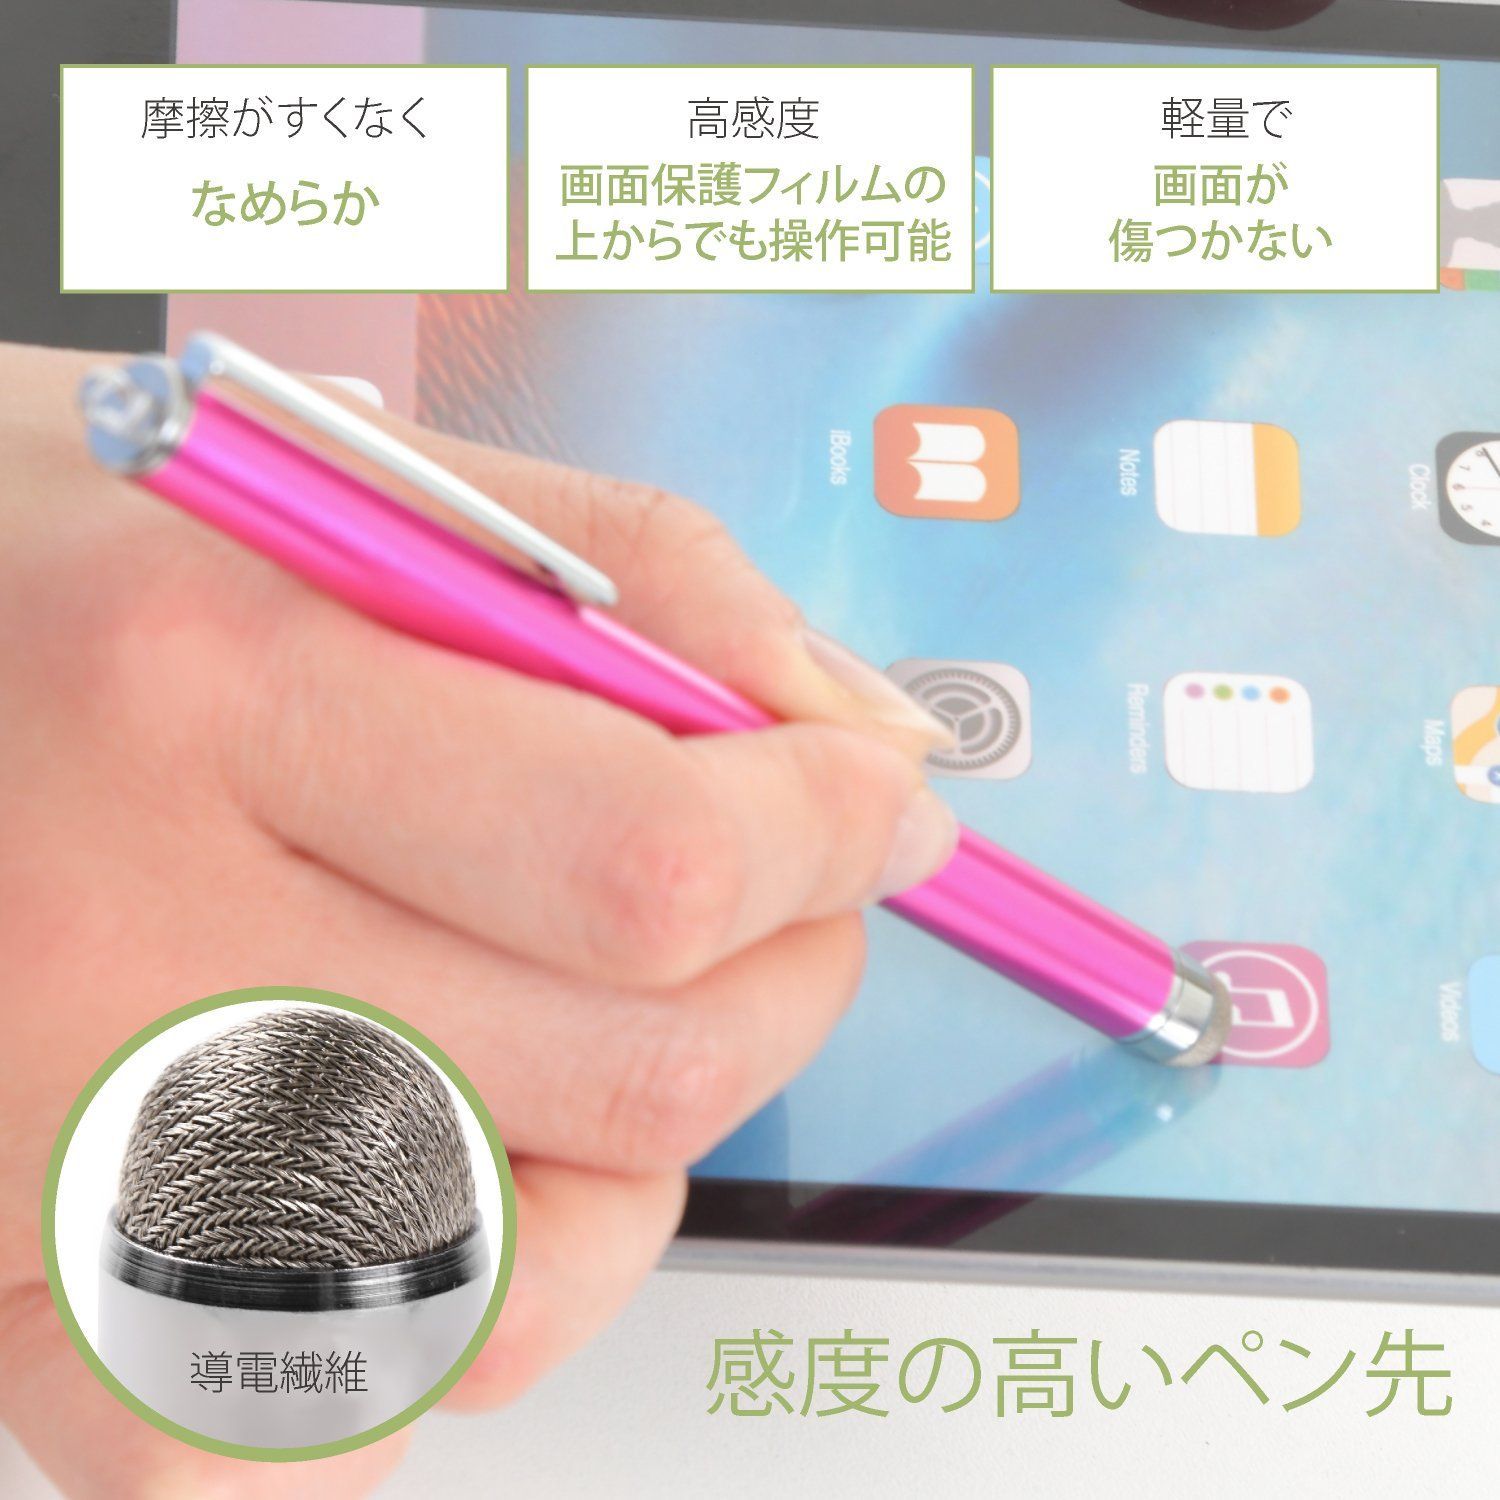 aibow タッチペン スマートフォン タブレット スタイラスペン iPad iPhone Android 交換用ペン先10個 6mm